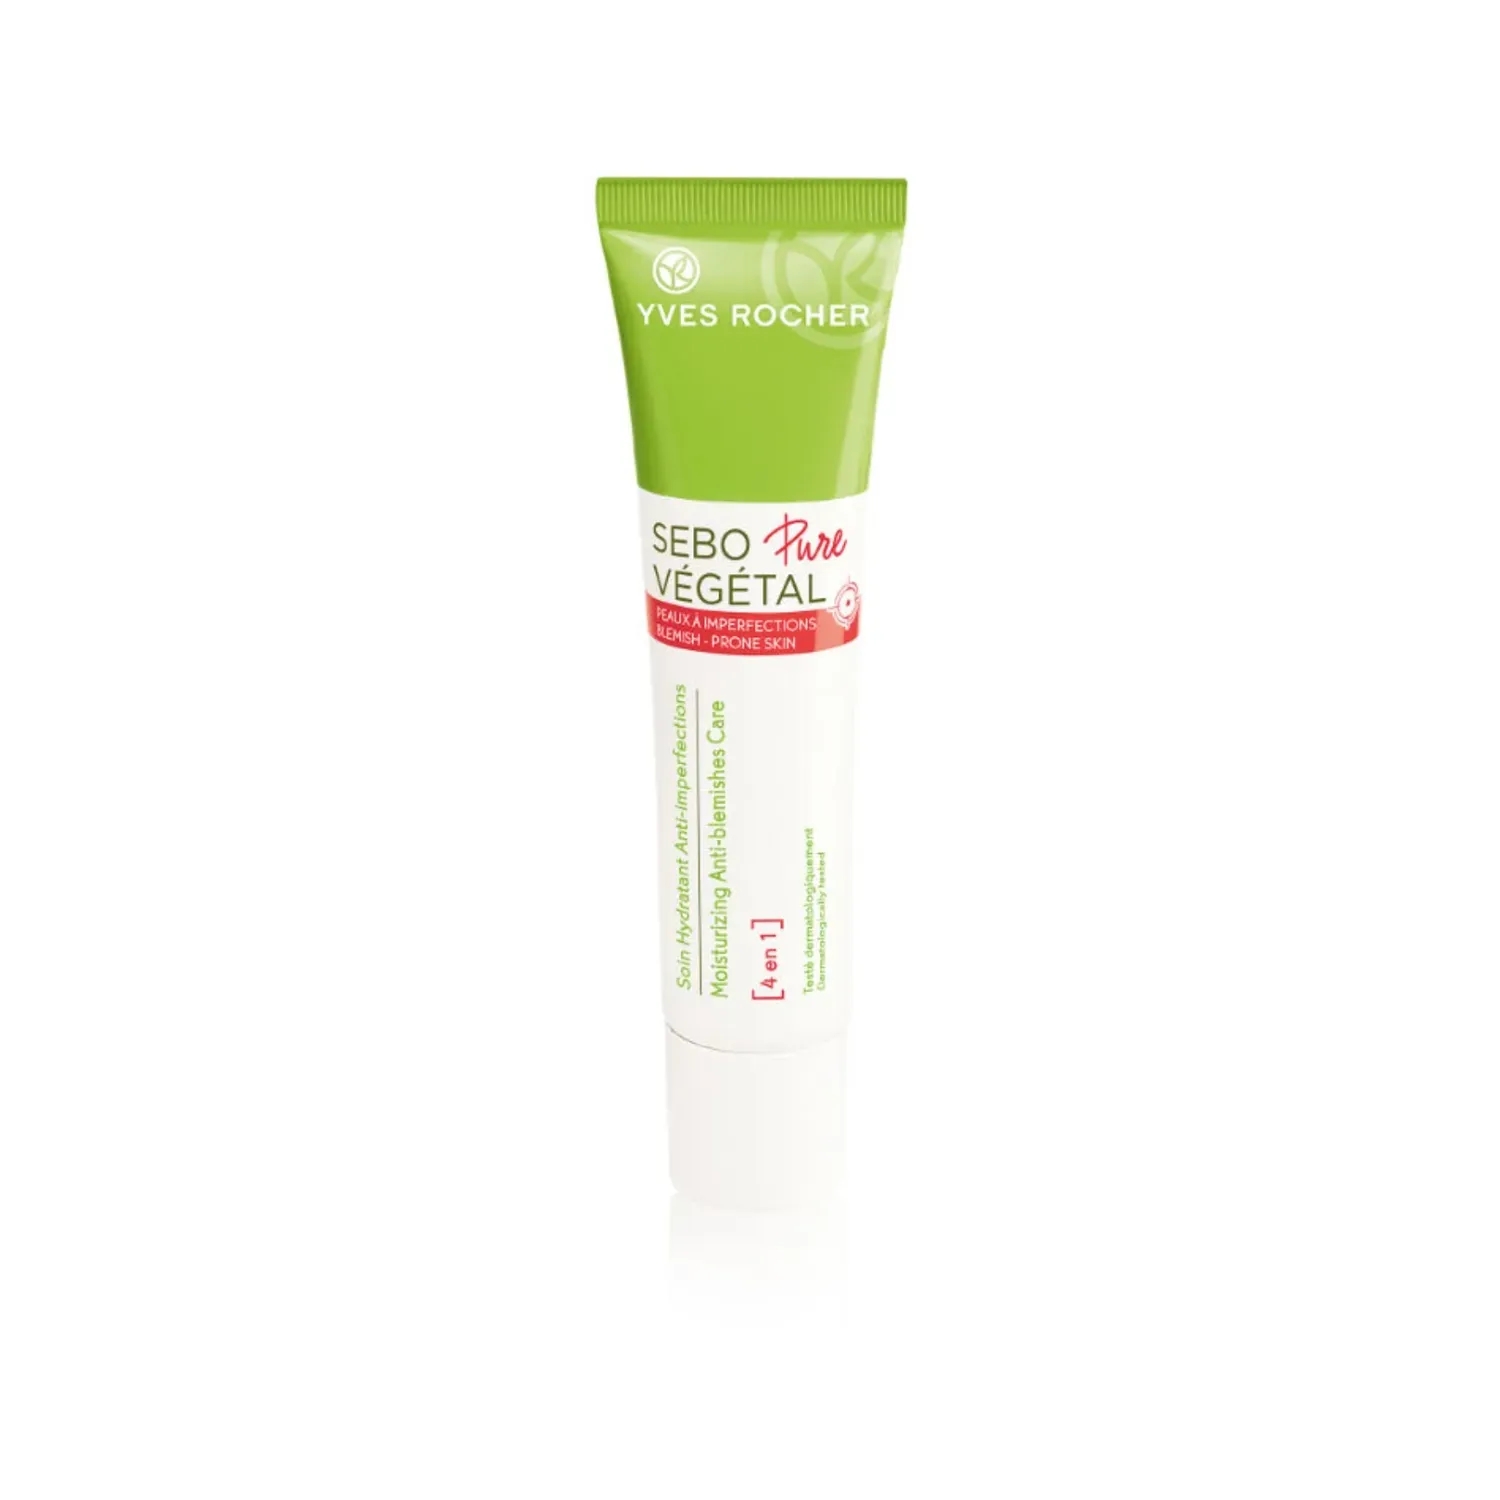 Yves Rocher | Yves Rocher Sebo Pure Vegetal Sos Spot Eraser Cream (10ml)